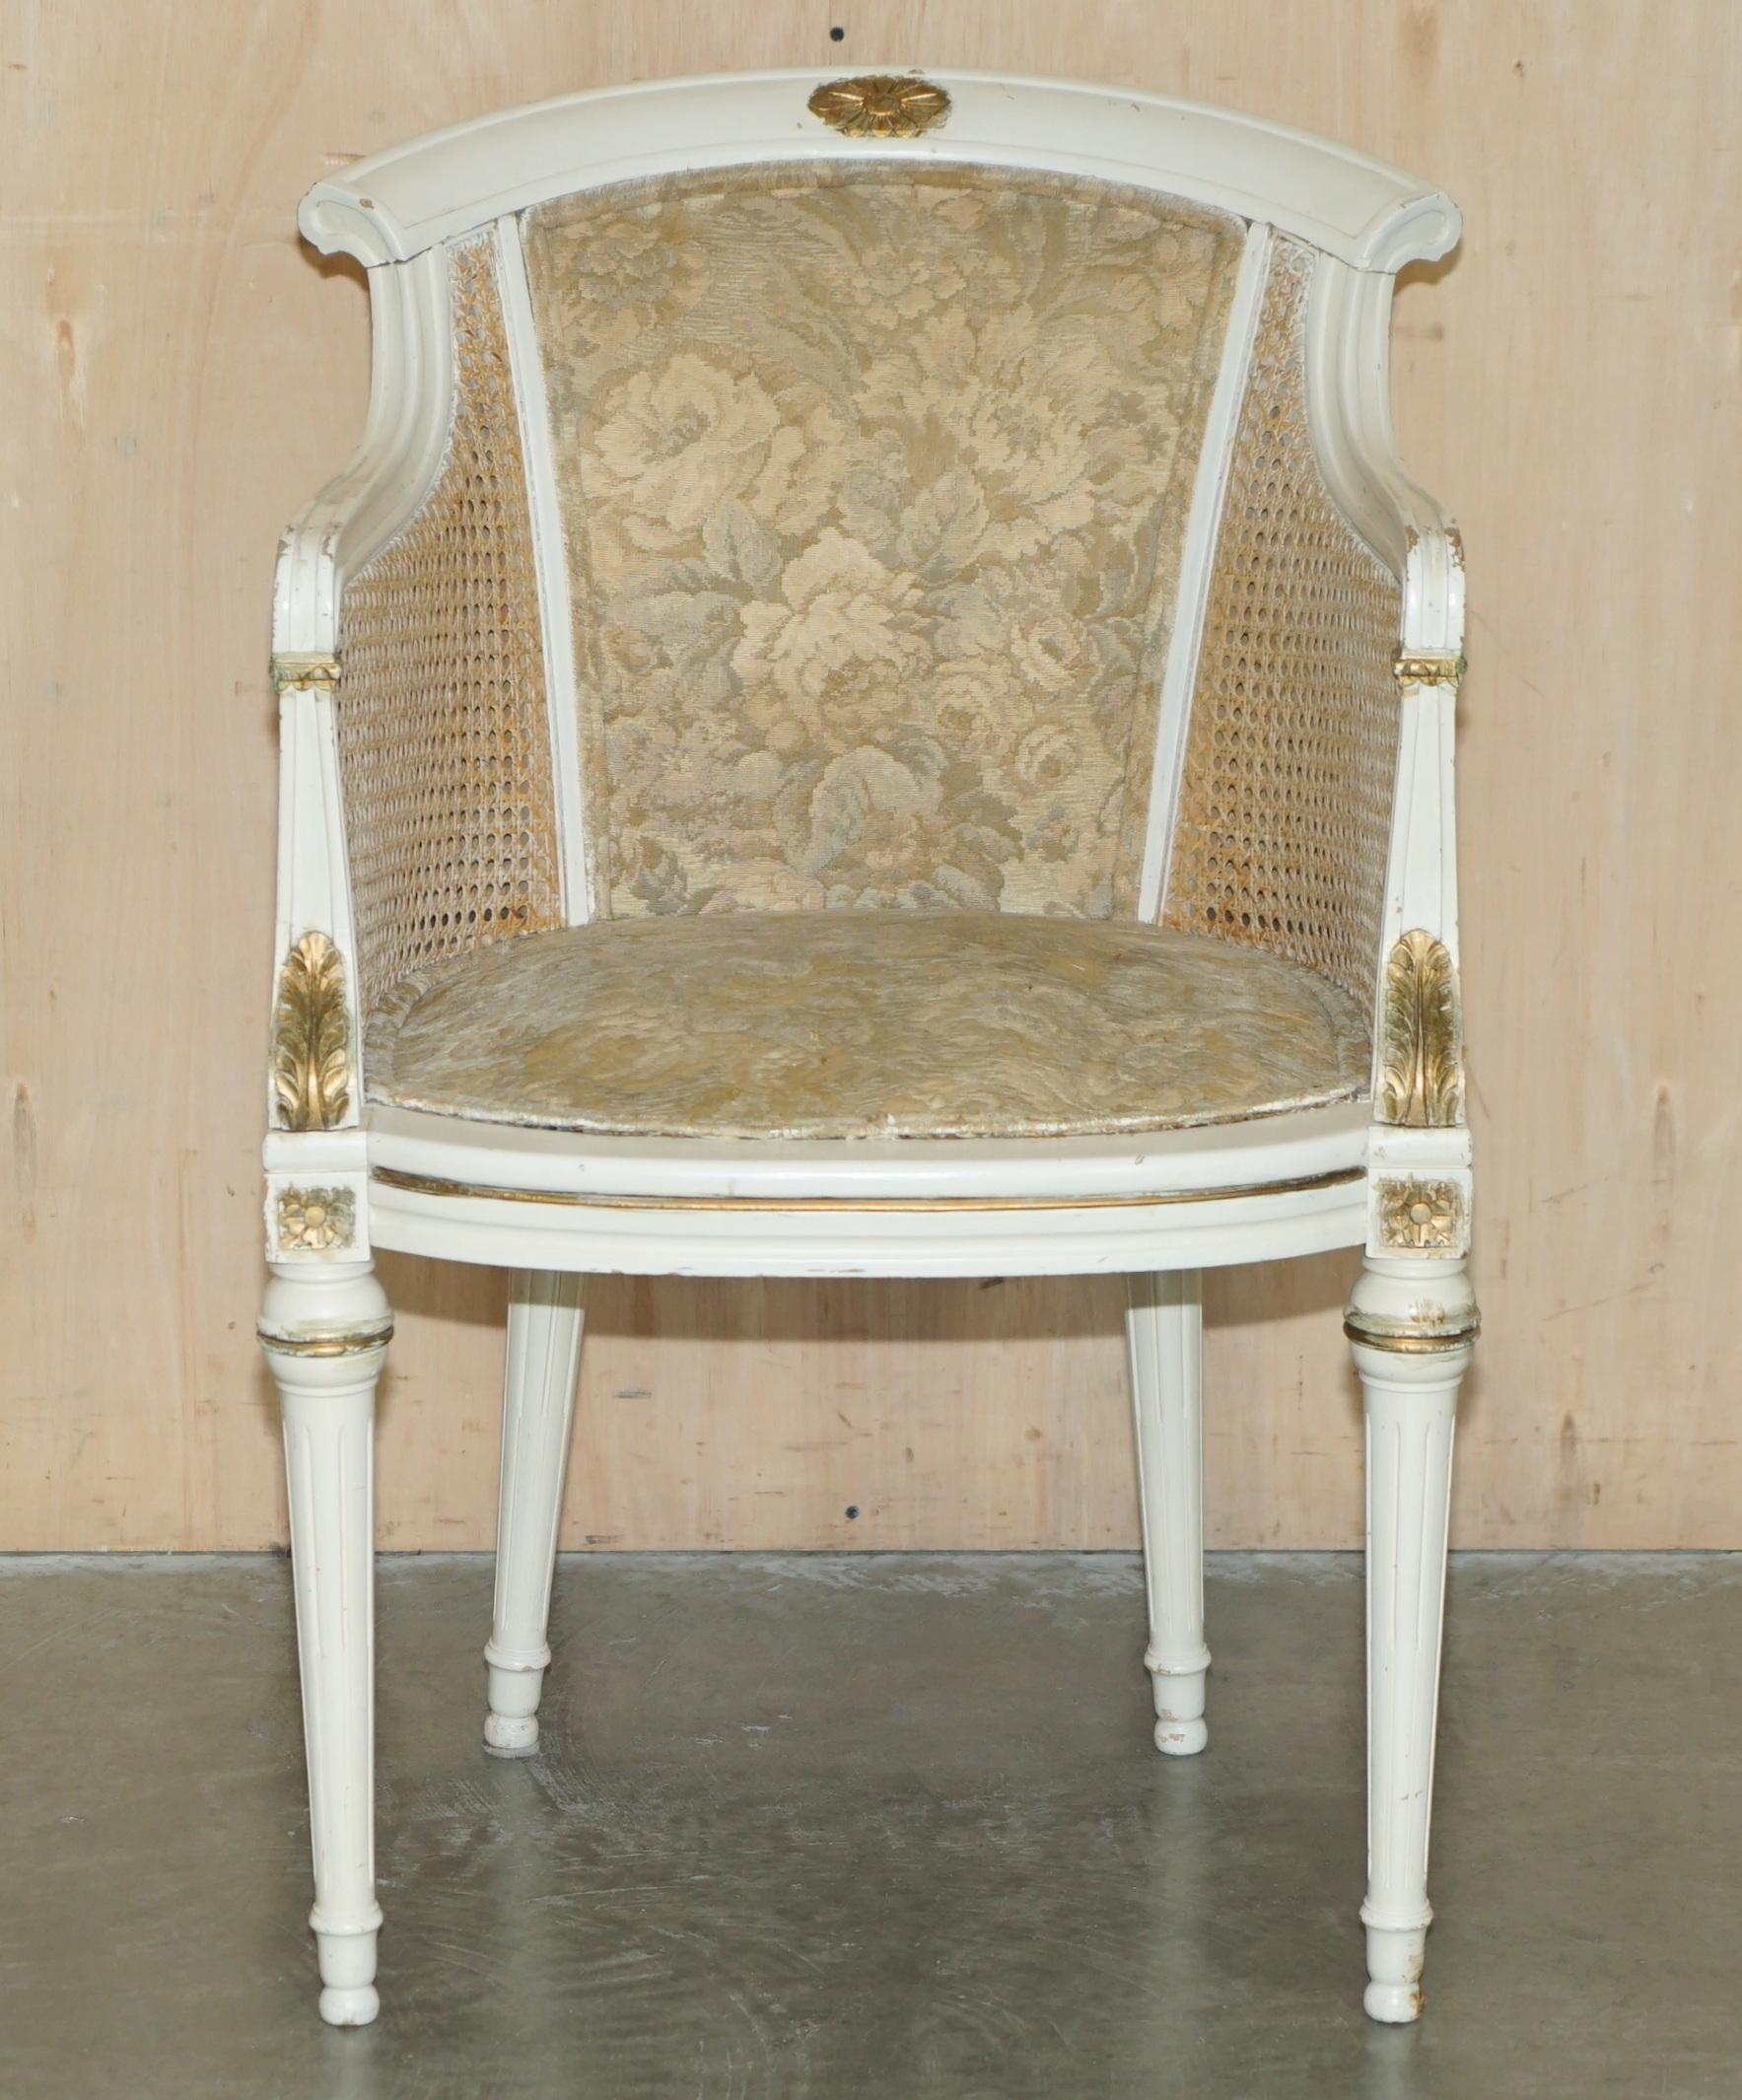 Royal House Antiques freut sich, diesen schönen, originallackierten Bergère-Sessel aus der Zeit um 1940 zum Verkauf anzubieten. 

Ein sehr gut aussehender, gut verarbeiteter und dekorativer Sessel, der für einen Schreibtisch oder Schminktisch oder